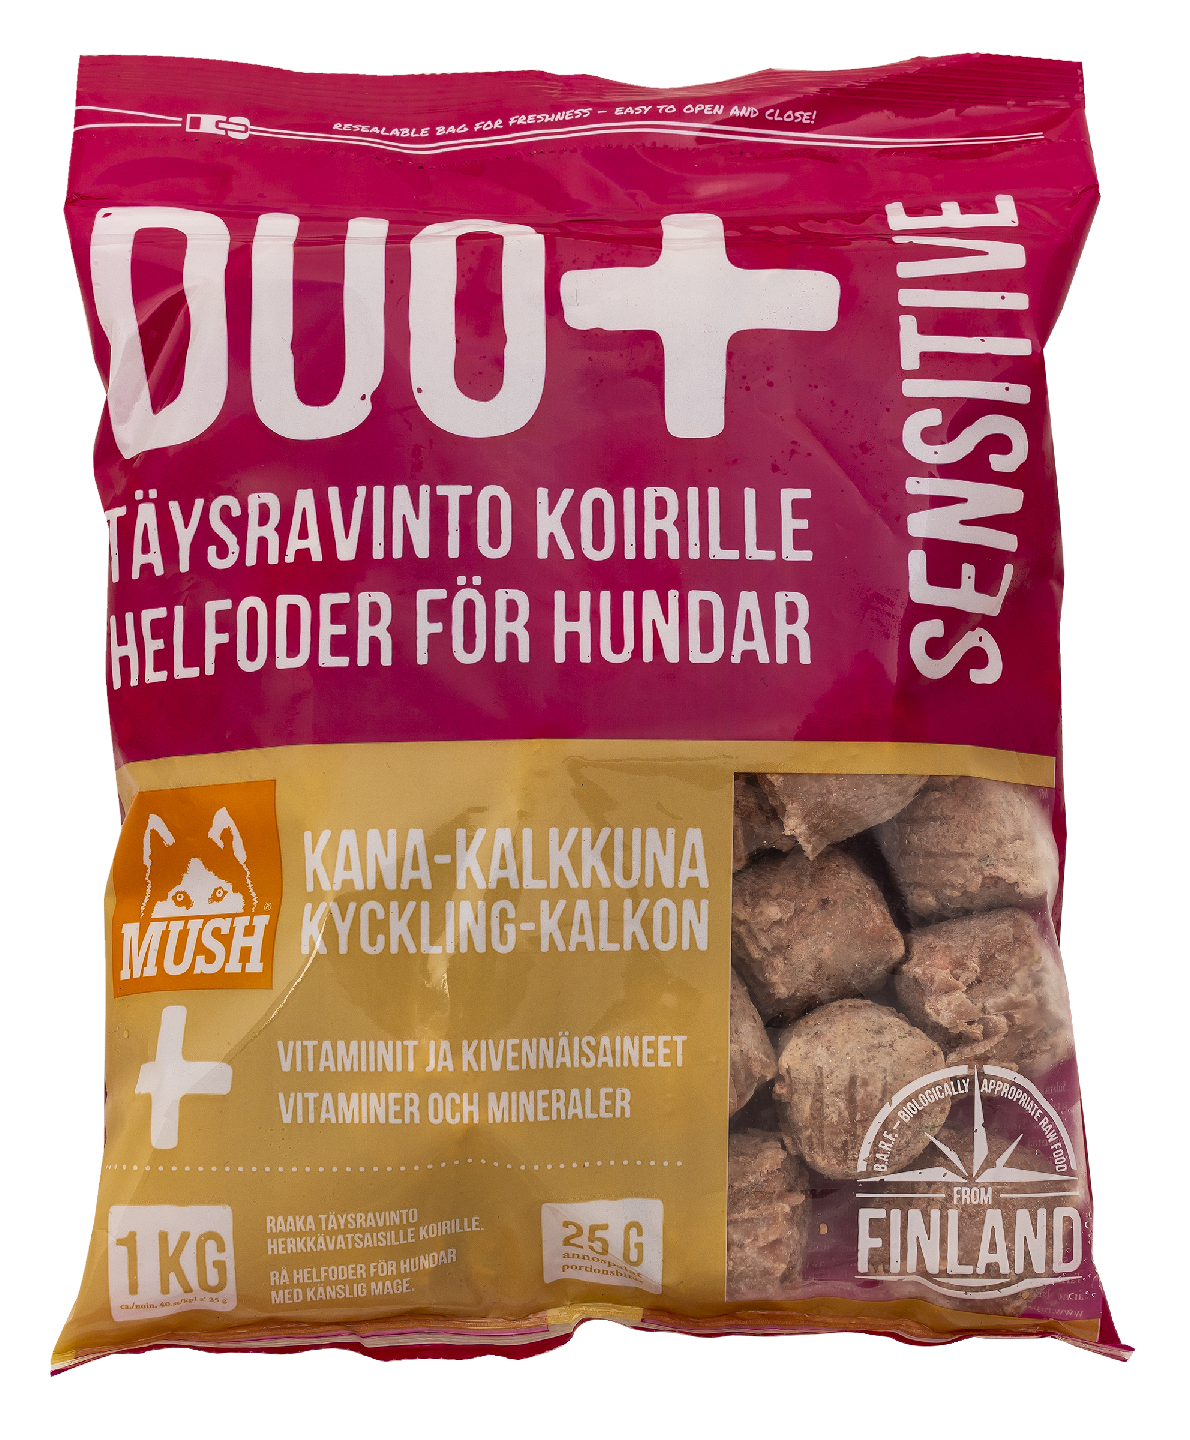 Mush Duo+ Täysravinto koirille sensitive kana-kalkkuna 1 kg